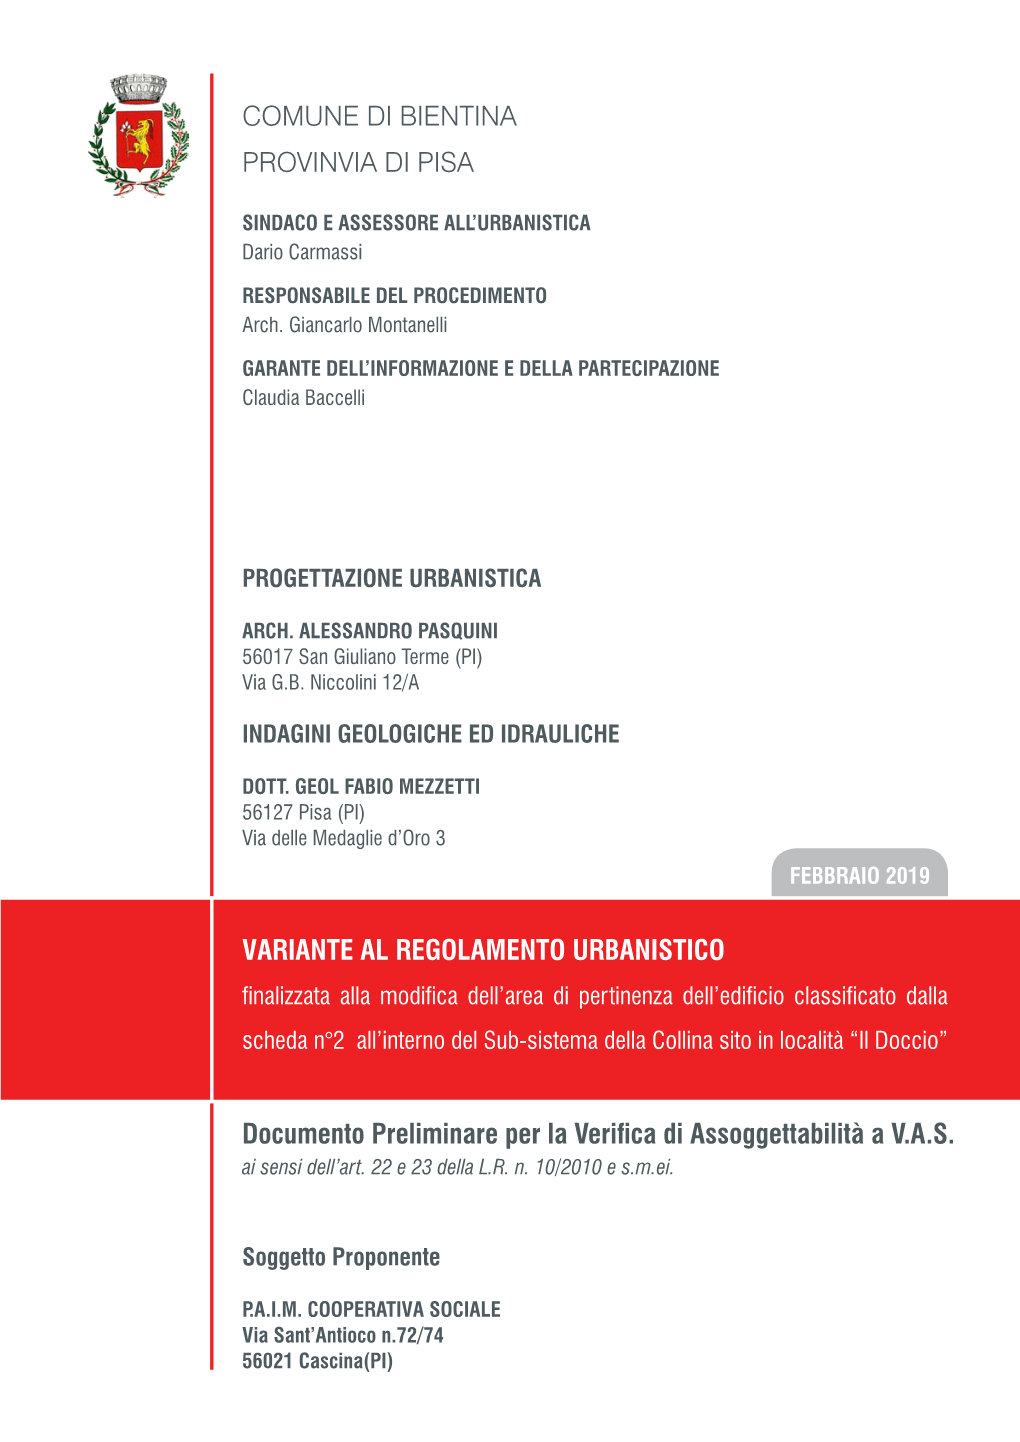 COMUNE DI BIENTINA Provinvia DI PISA Documento Preliminare Per La Verifica Di Assoggettabilità a V.A.S. Variante Al Regolamento